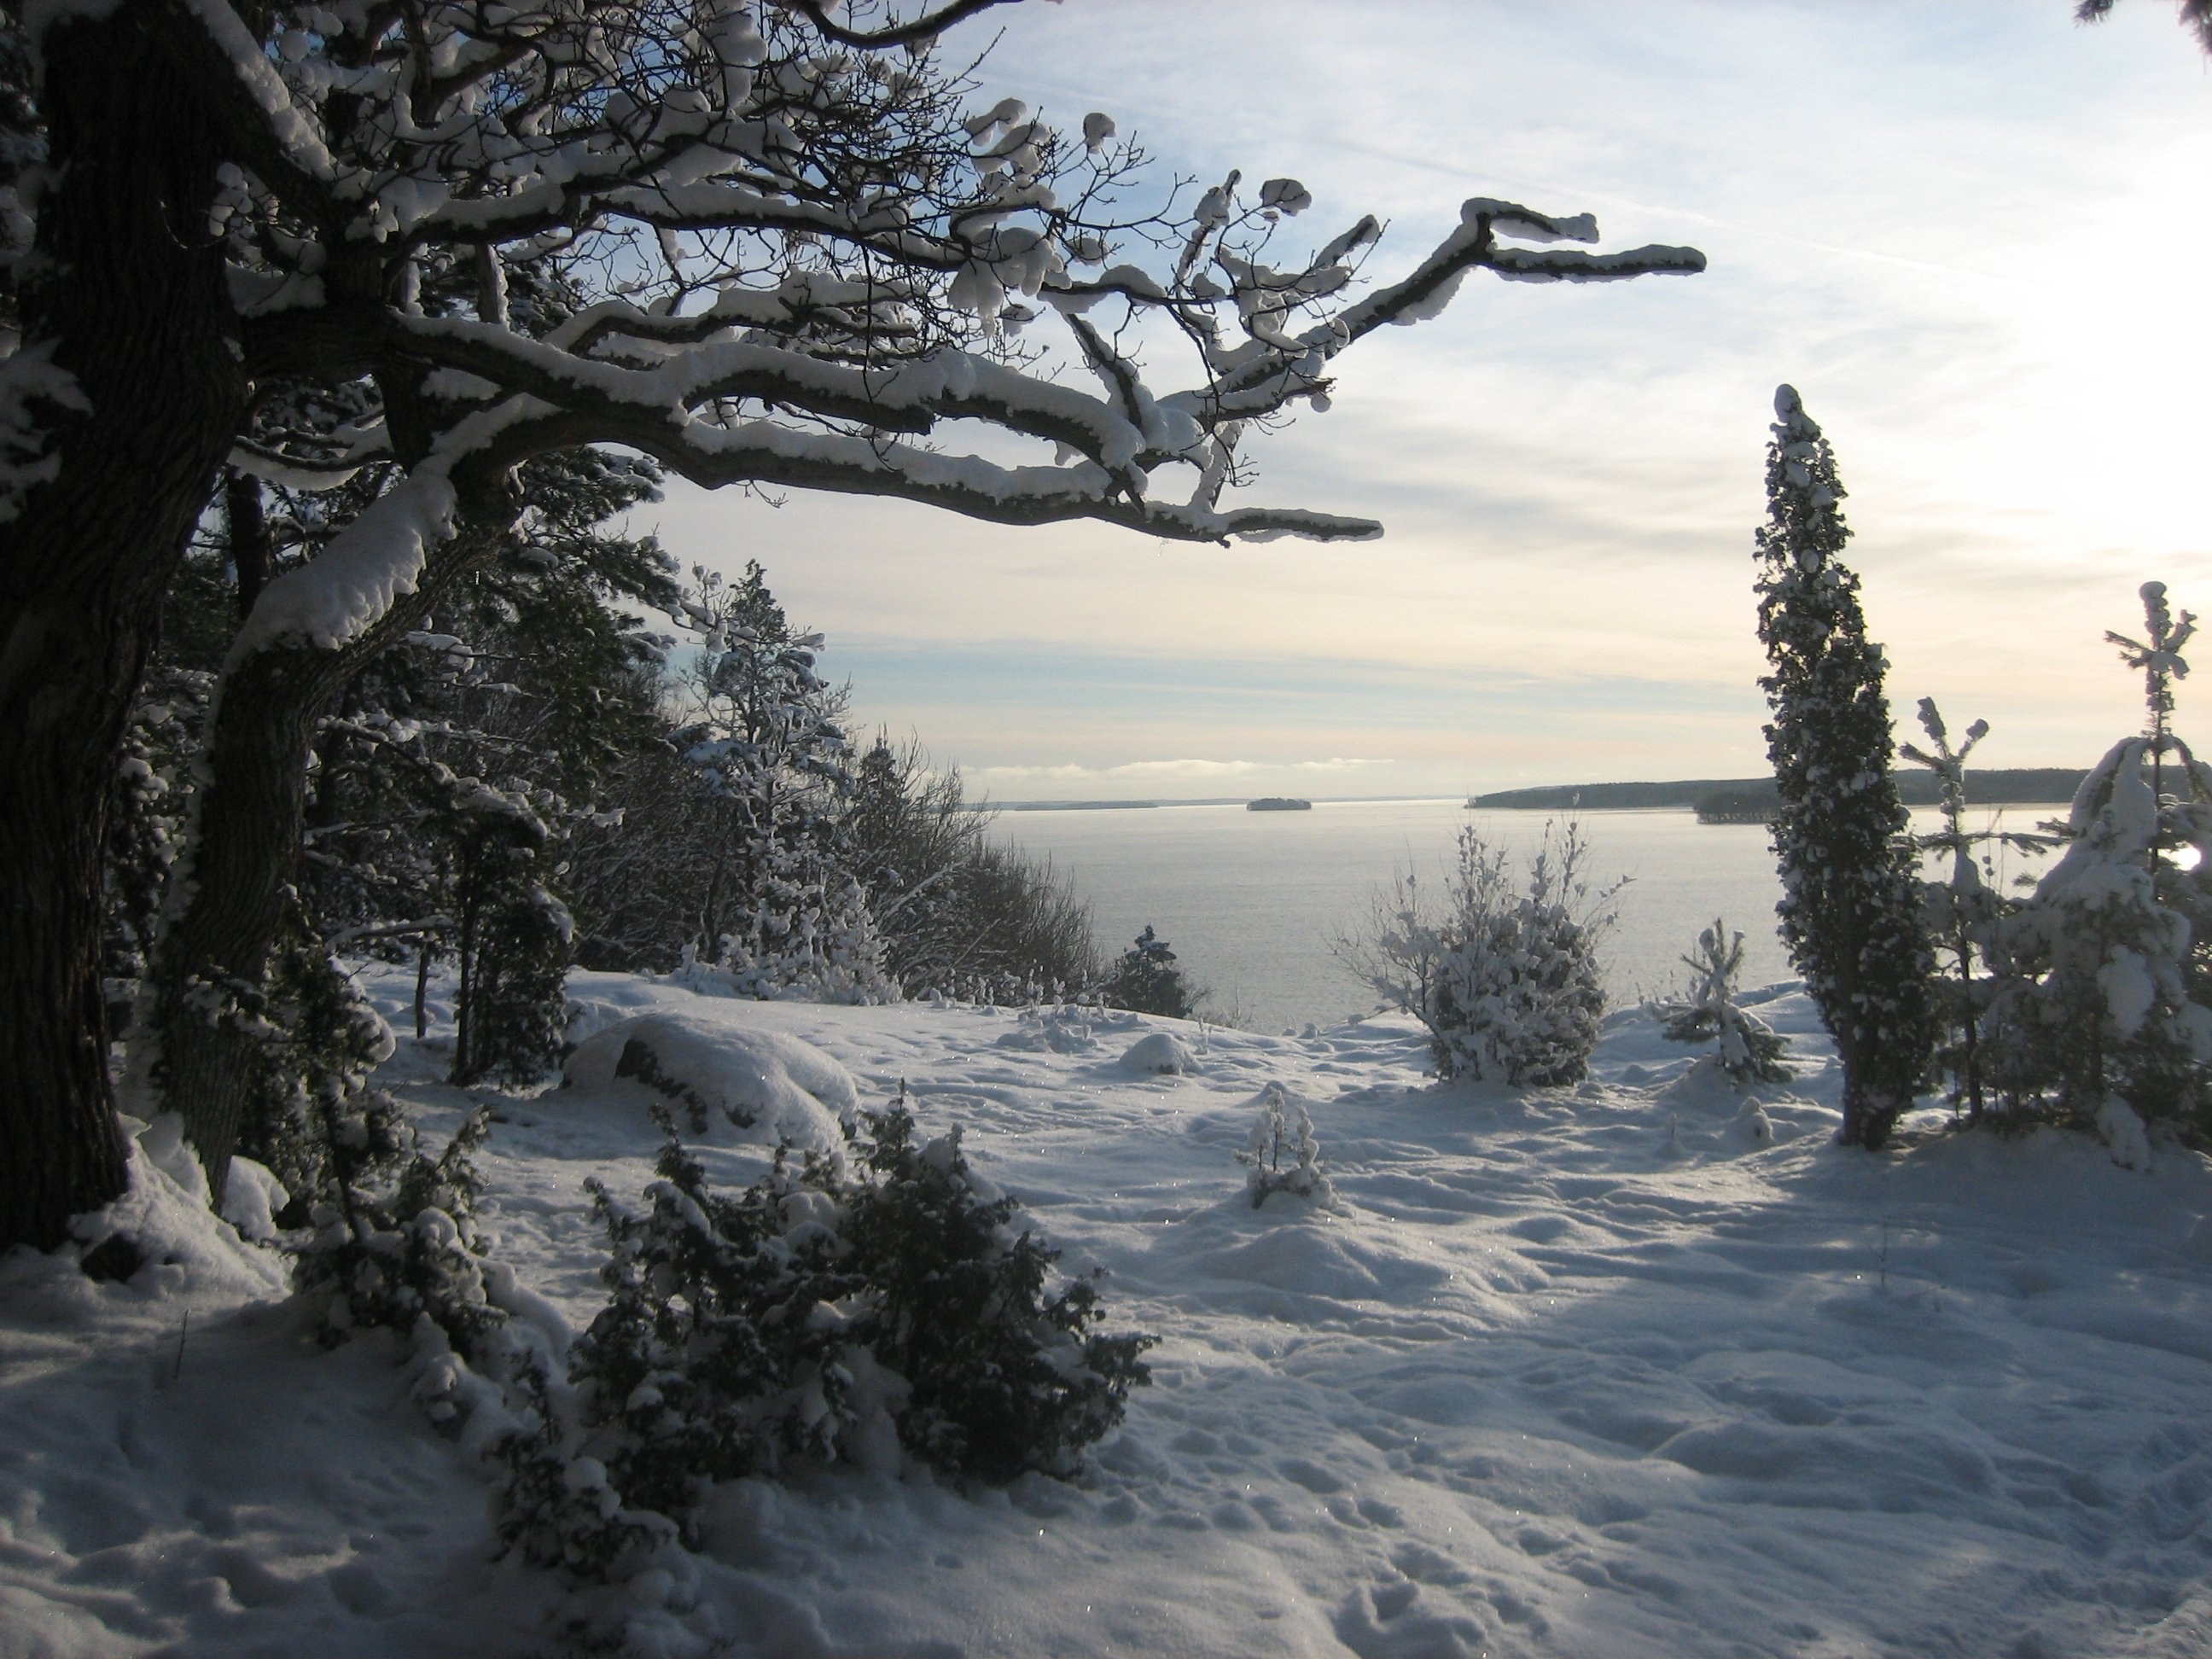 En utsiktsplats på klippor vid vattnet. Det ligger mycket snö på klipporna och träden.